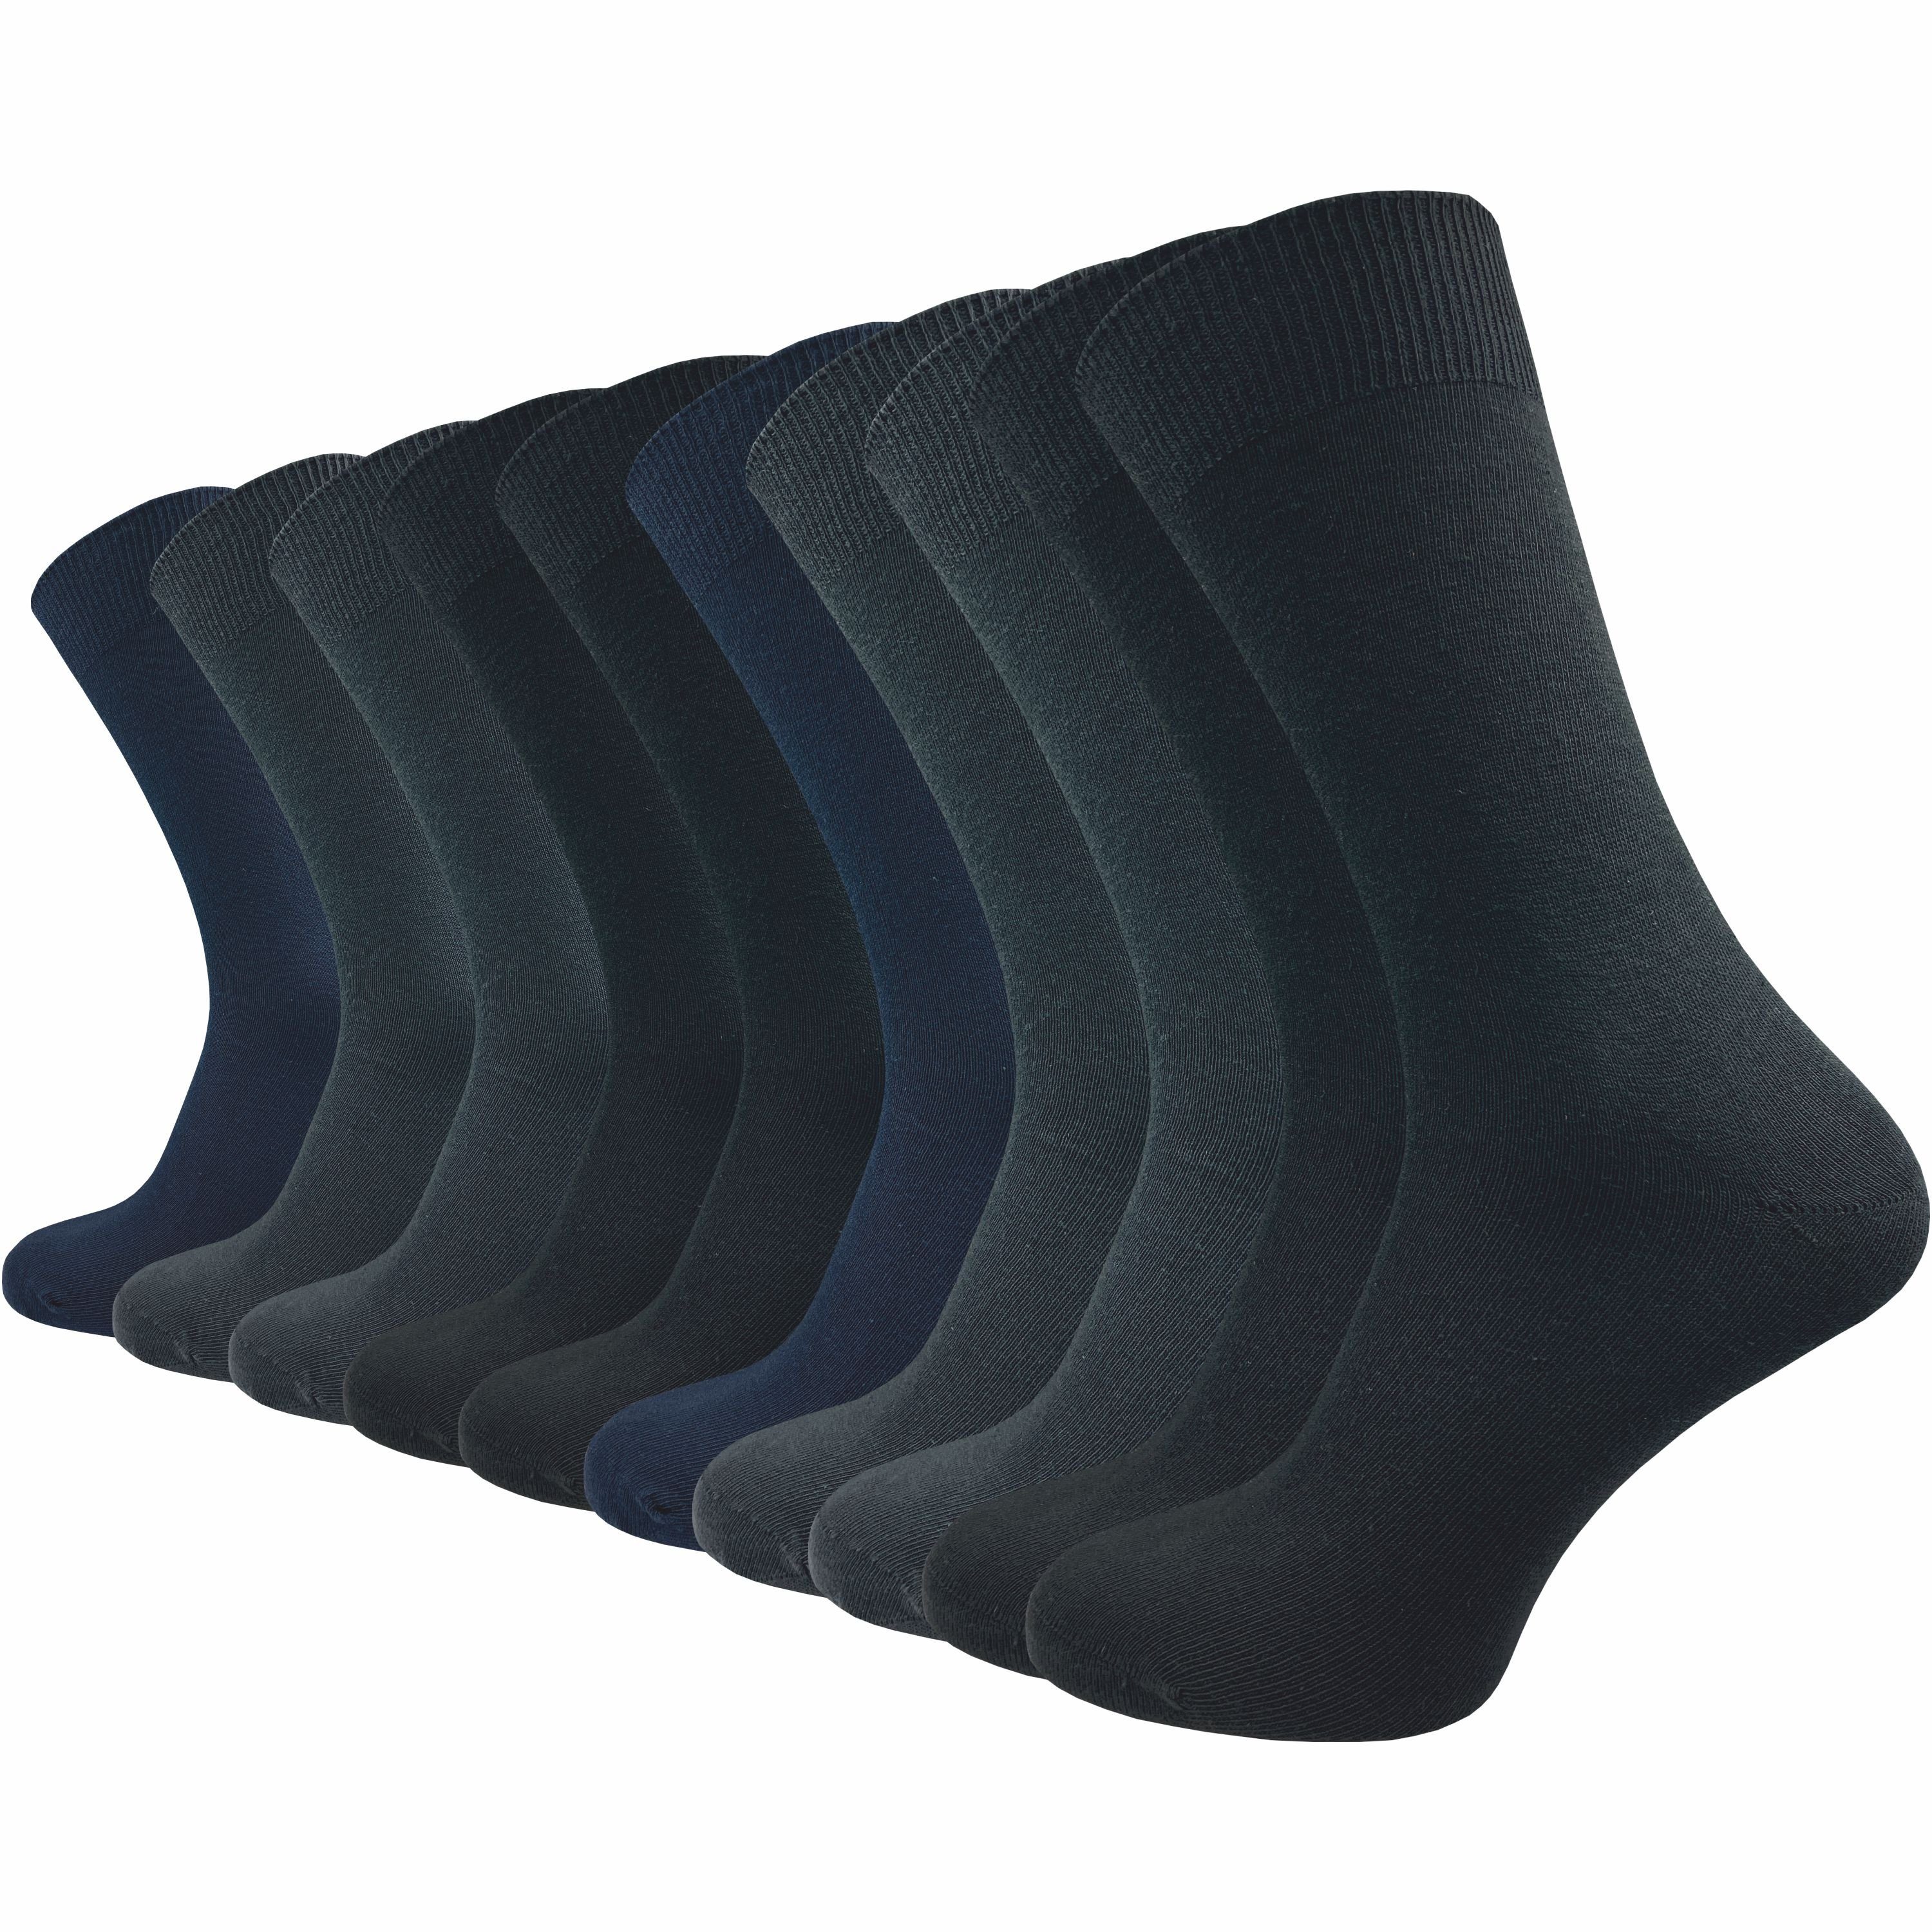 blau- (10 & Socken Gummidruck 3 für 100% aus Farbkombinationen Paar) in natur-, dunkle - Baumwolle Töne ohne ideale Herren Sortiments GAWILO Basicsocken Ihres Ergänzung